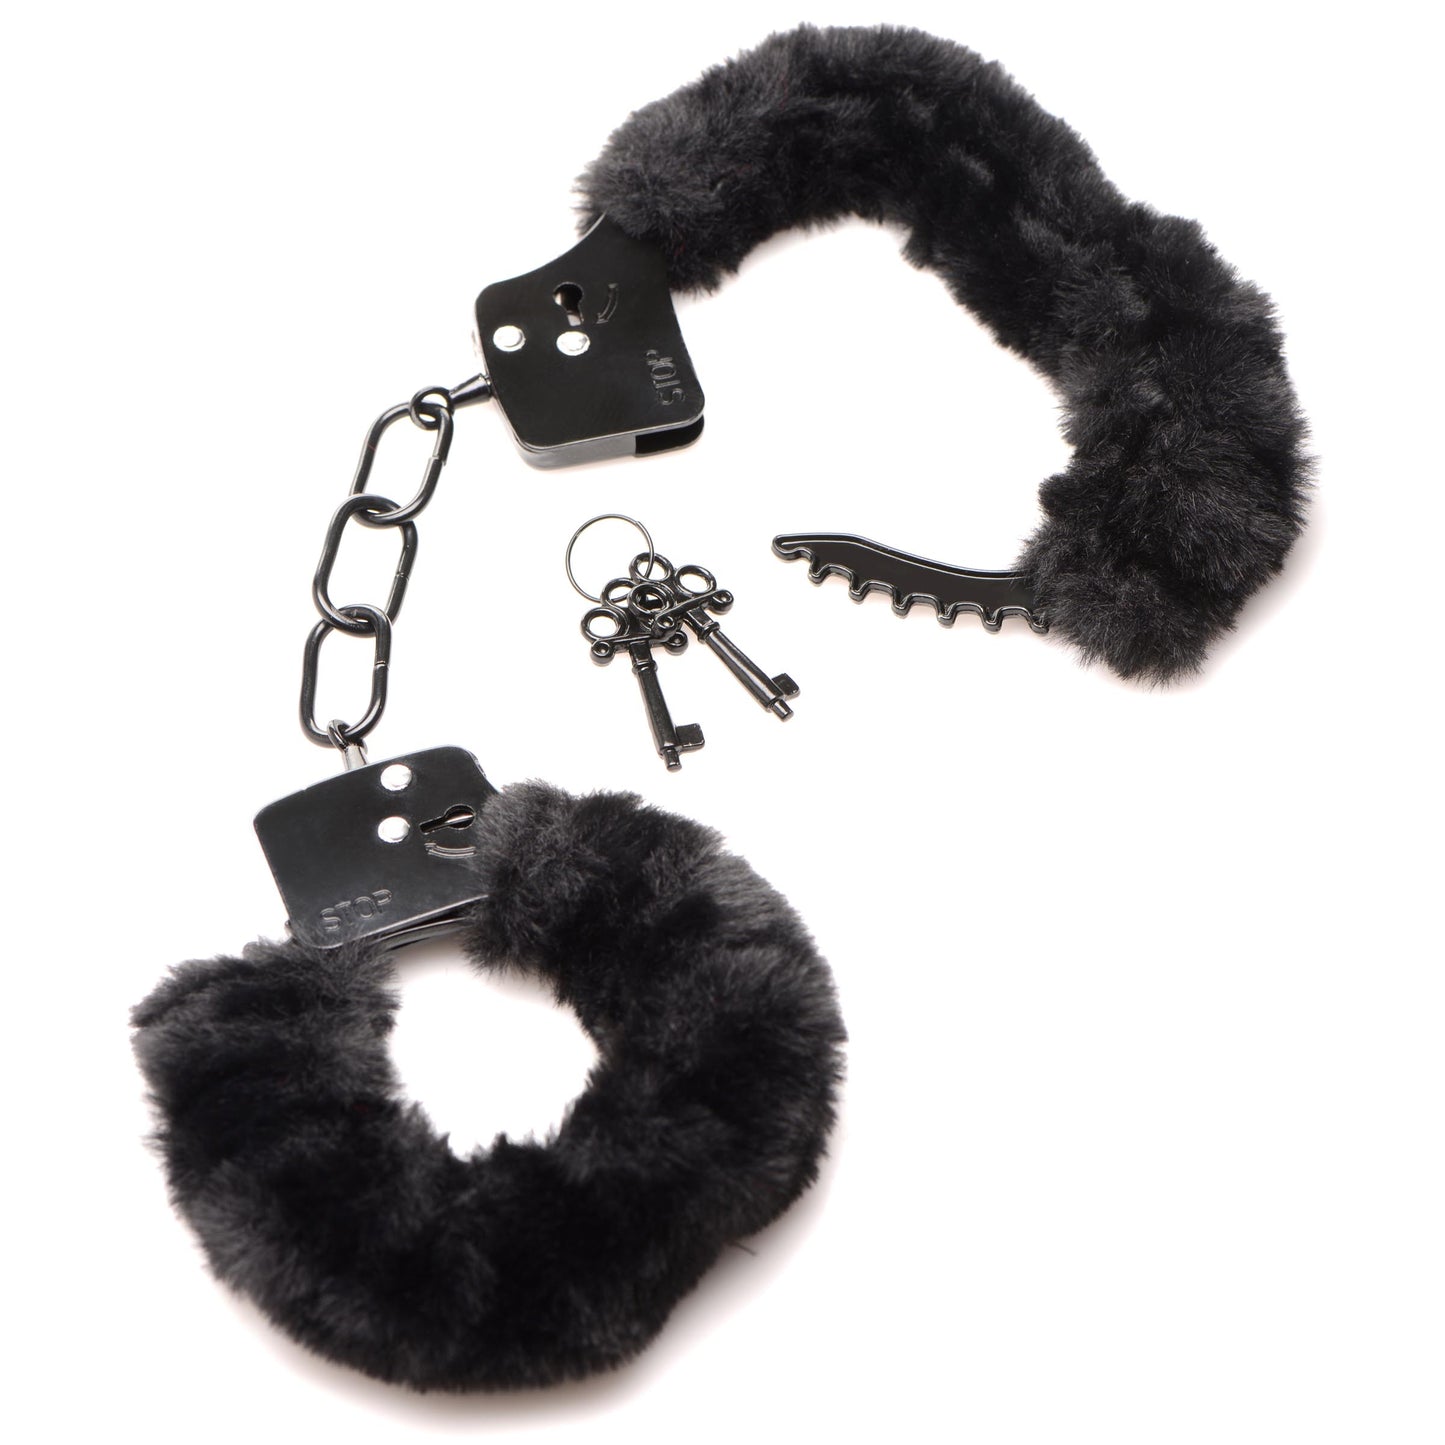 Cuffed In Fur Furry Handcuffs - Black - UABDSM